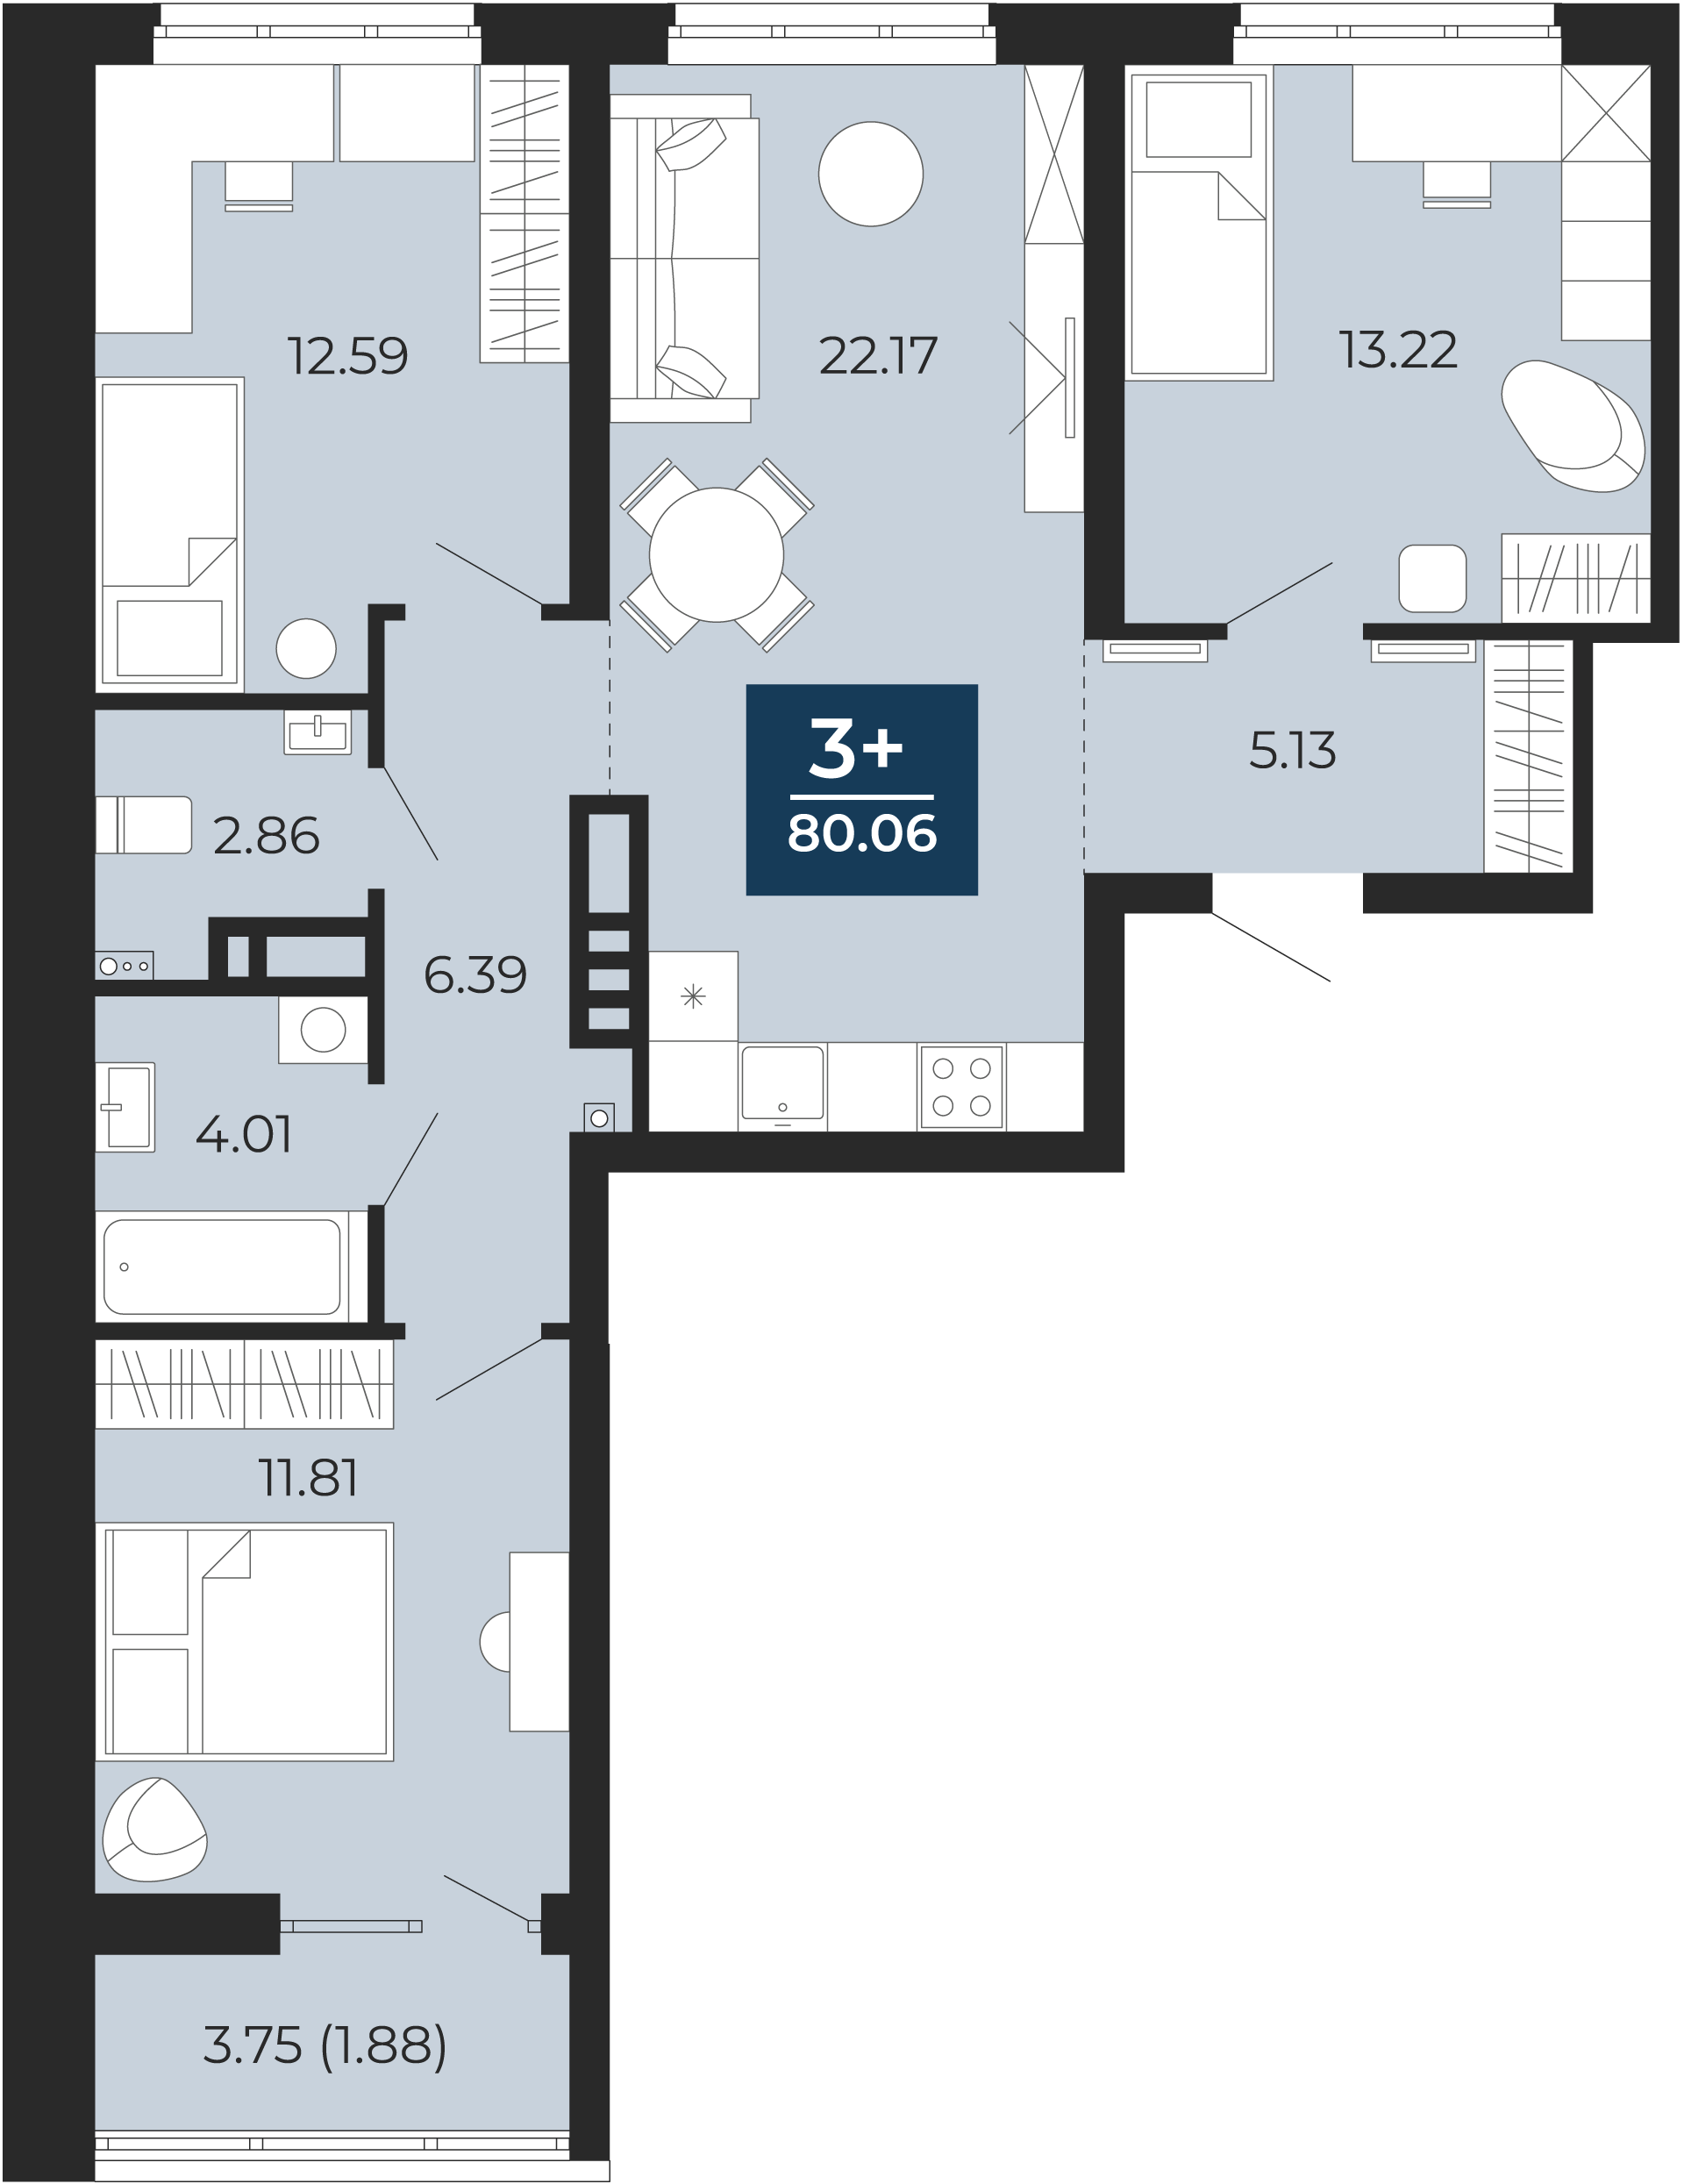 Квартира № 252, 3-комнатная, 80.06 кв. м, 14 этаж